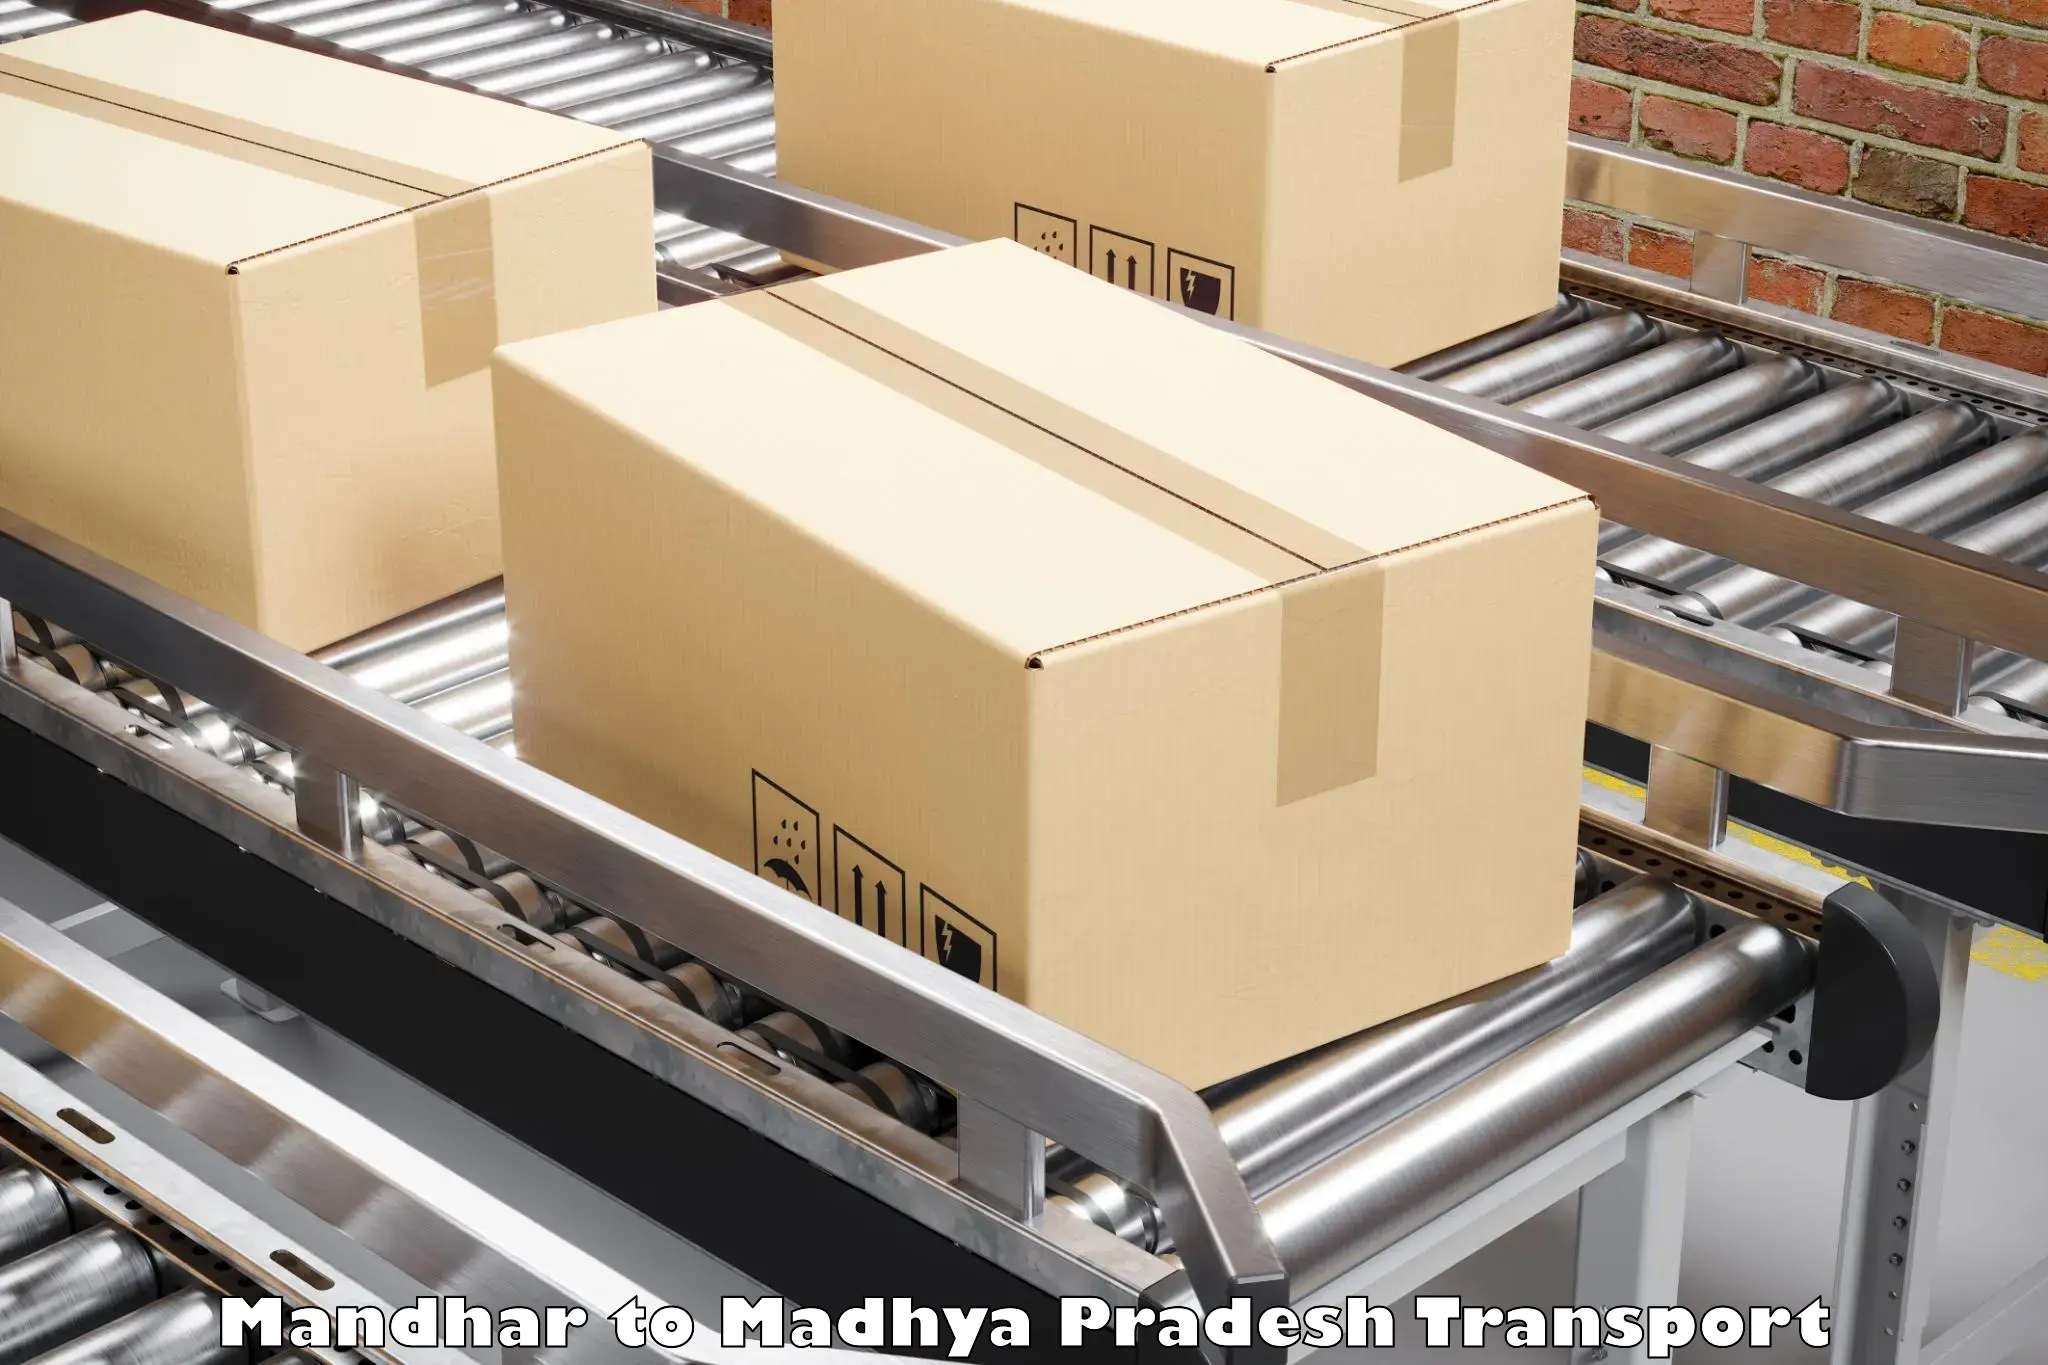 Lorry transport service Mandhar to Jaitwara